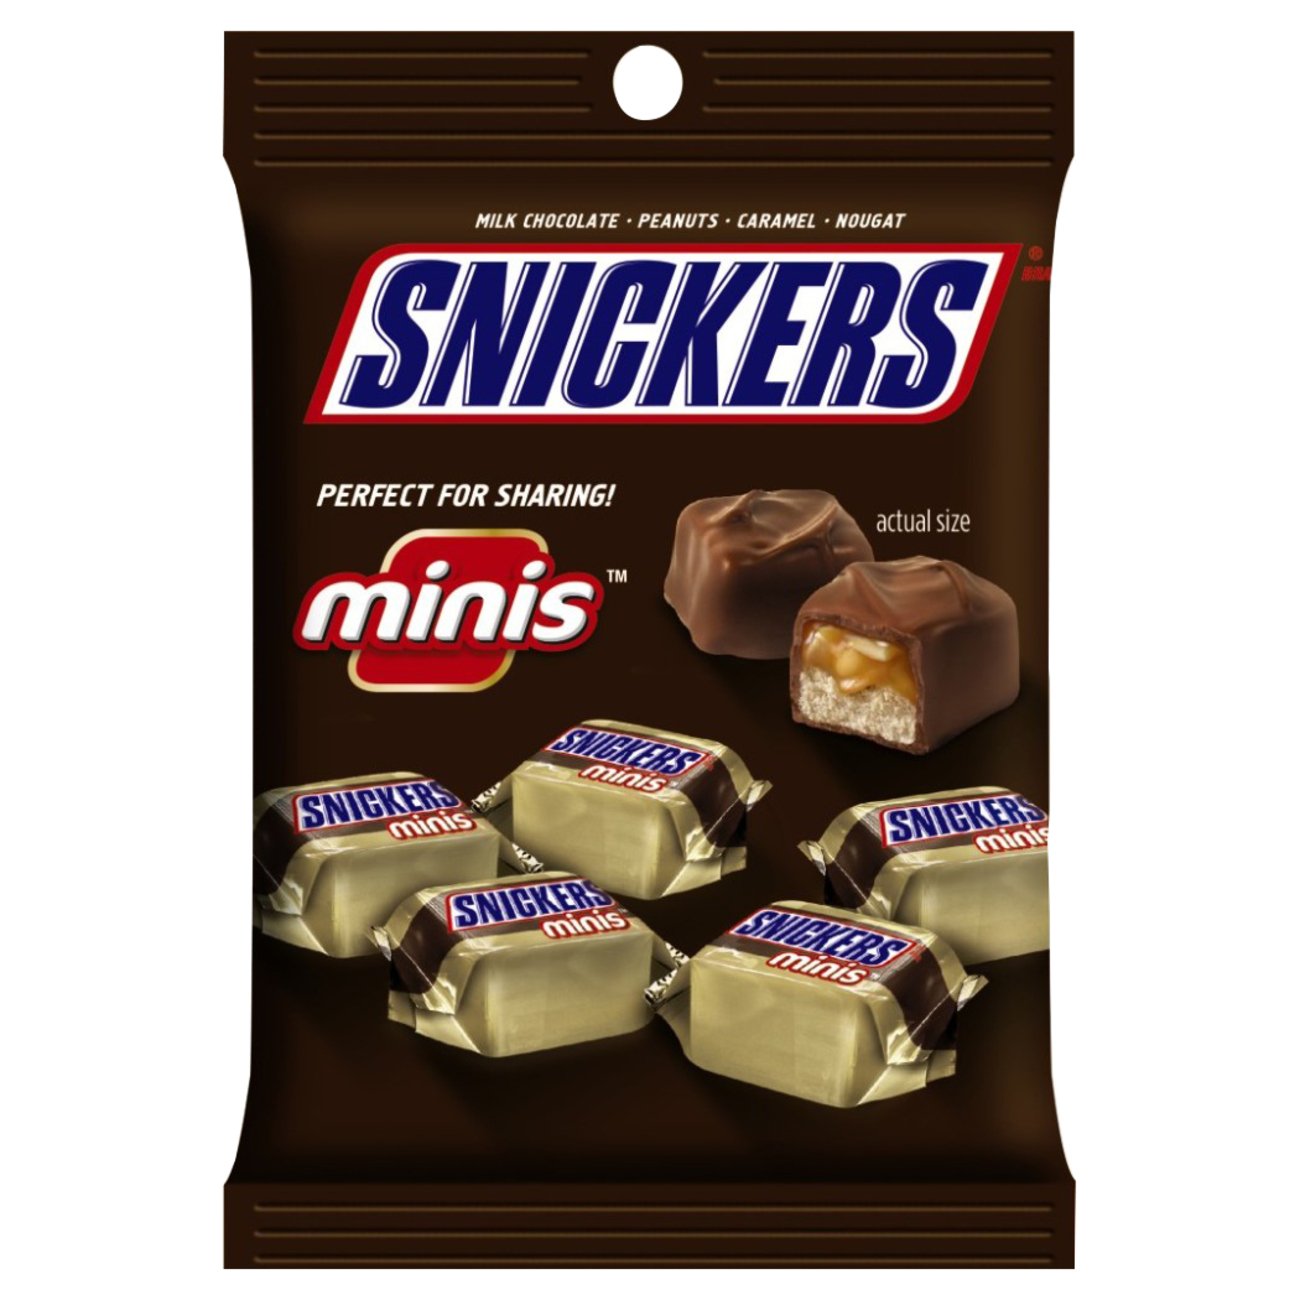 Snickers Mini's Ice Cream Bars - Shop Bars & Pops at H-E-B